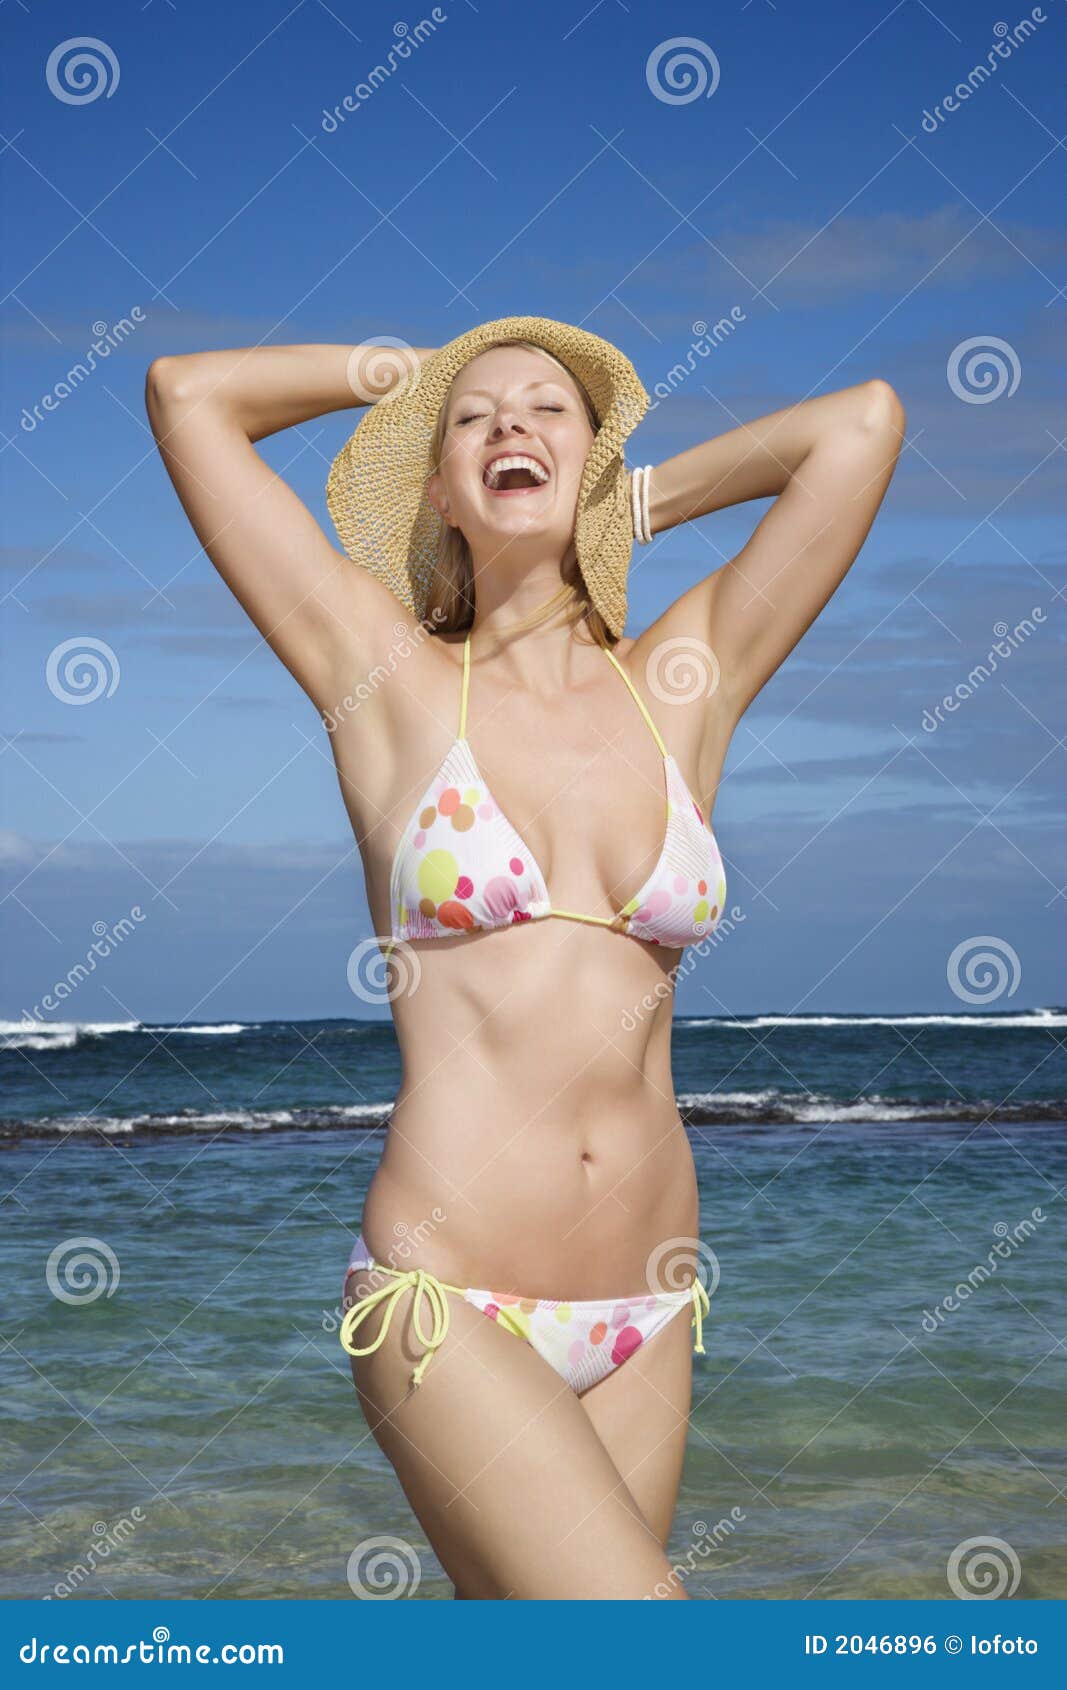 Woman in bikini on beach stock photo